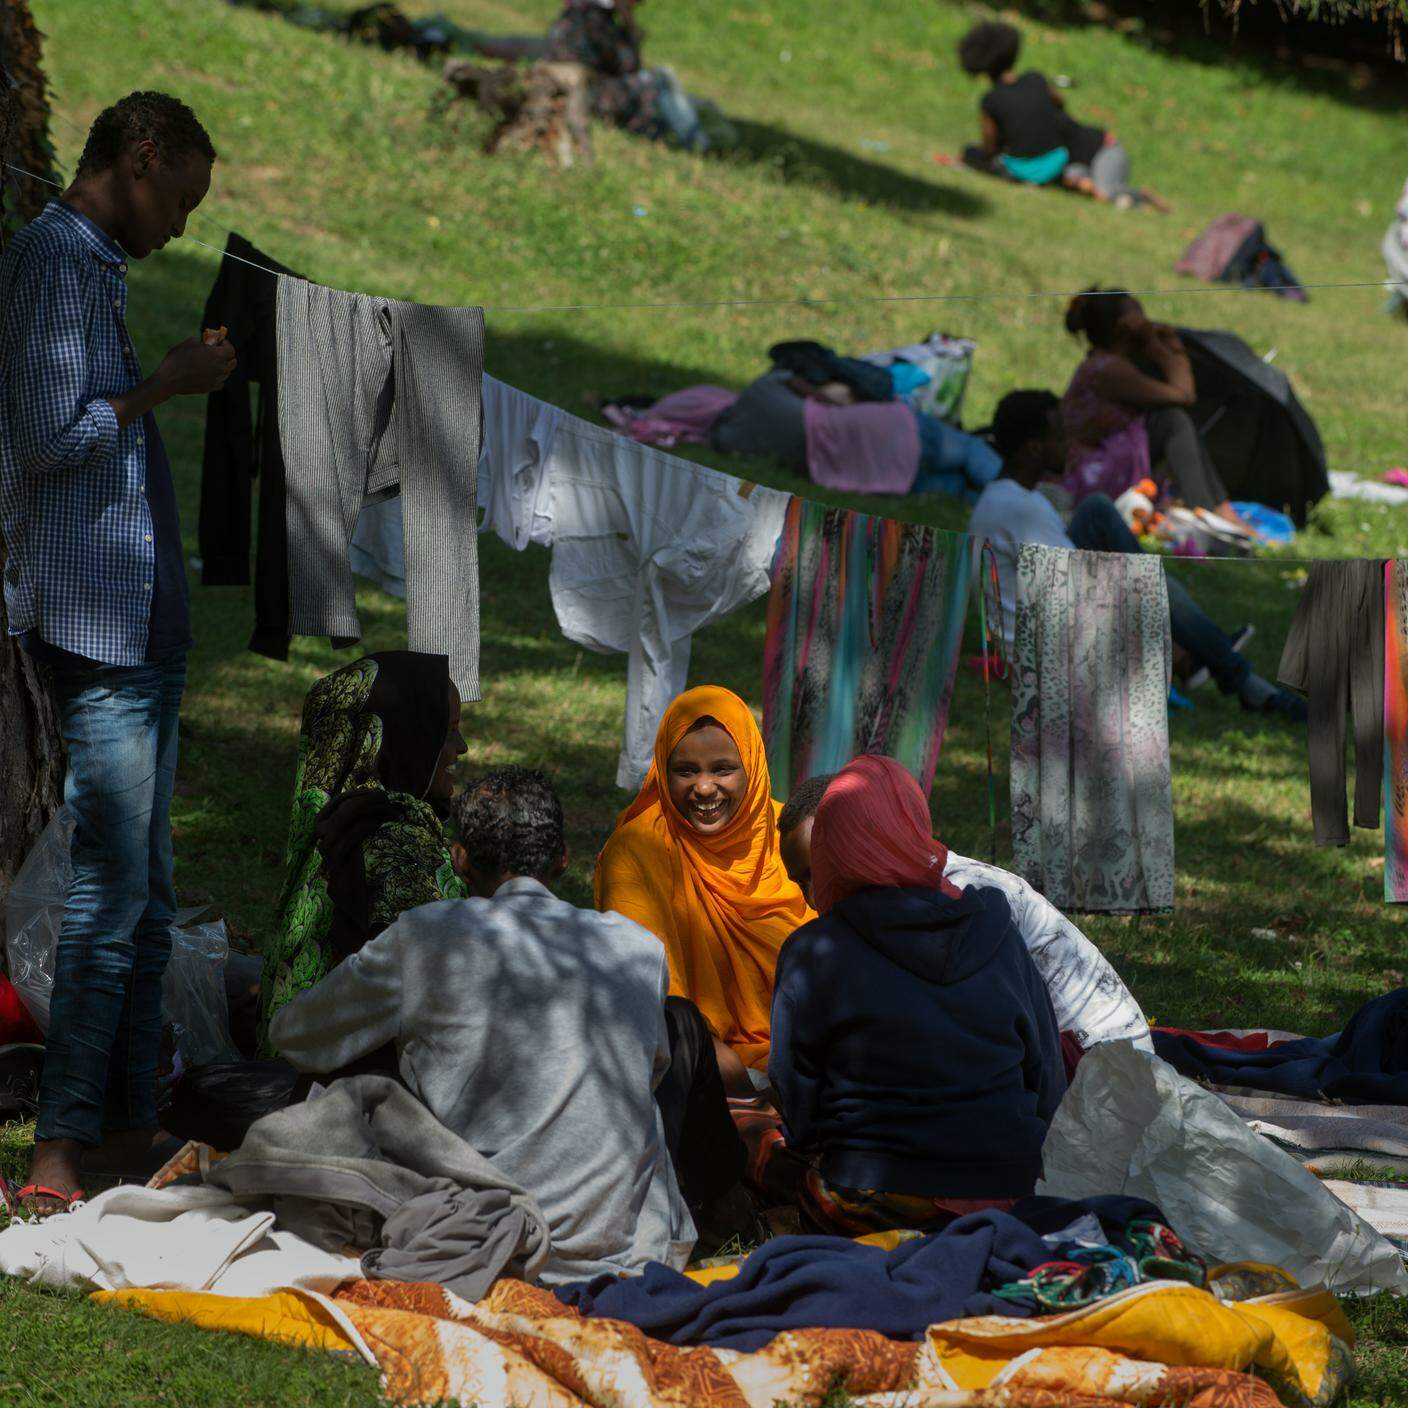 I migranti accampati nel parco vicino alla stazione